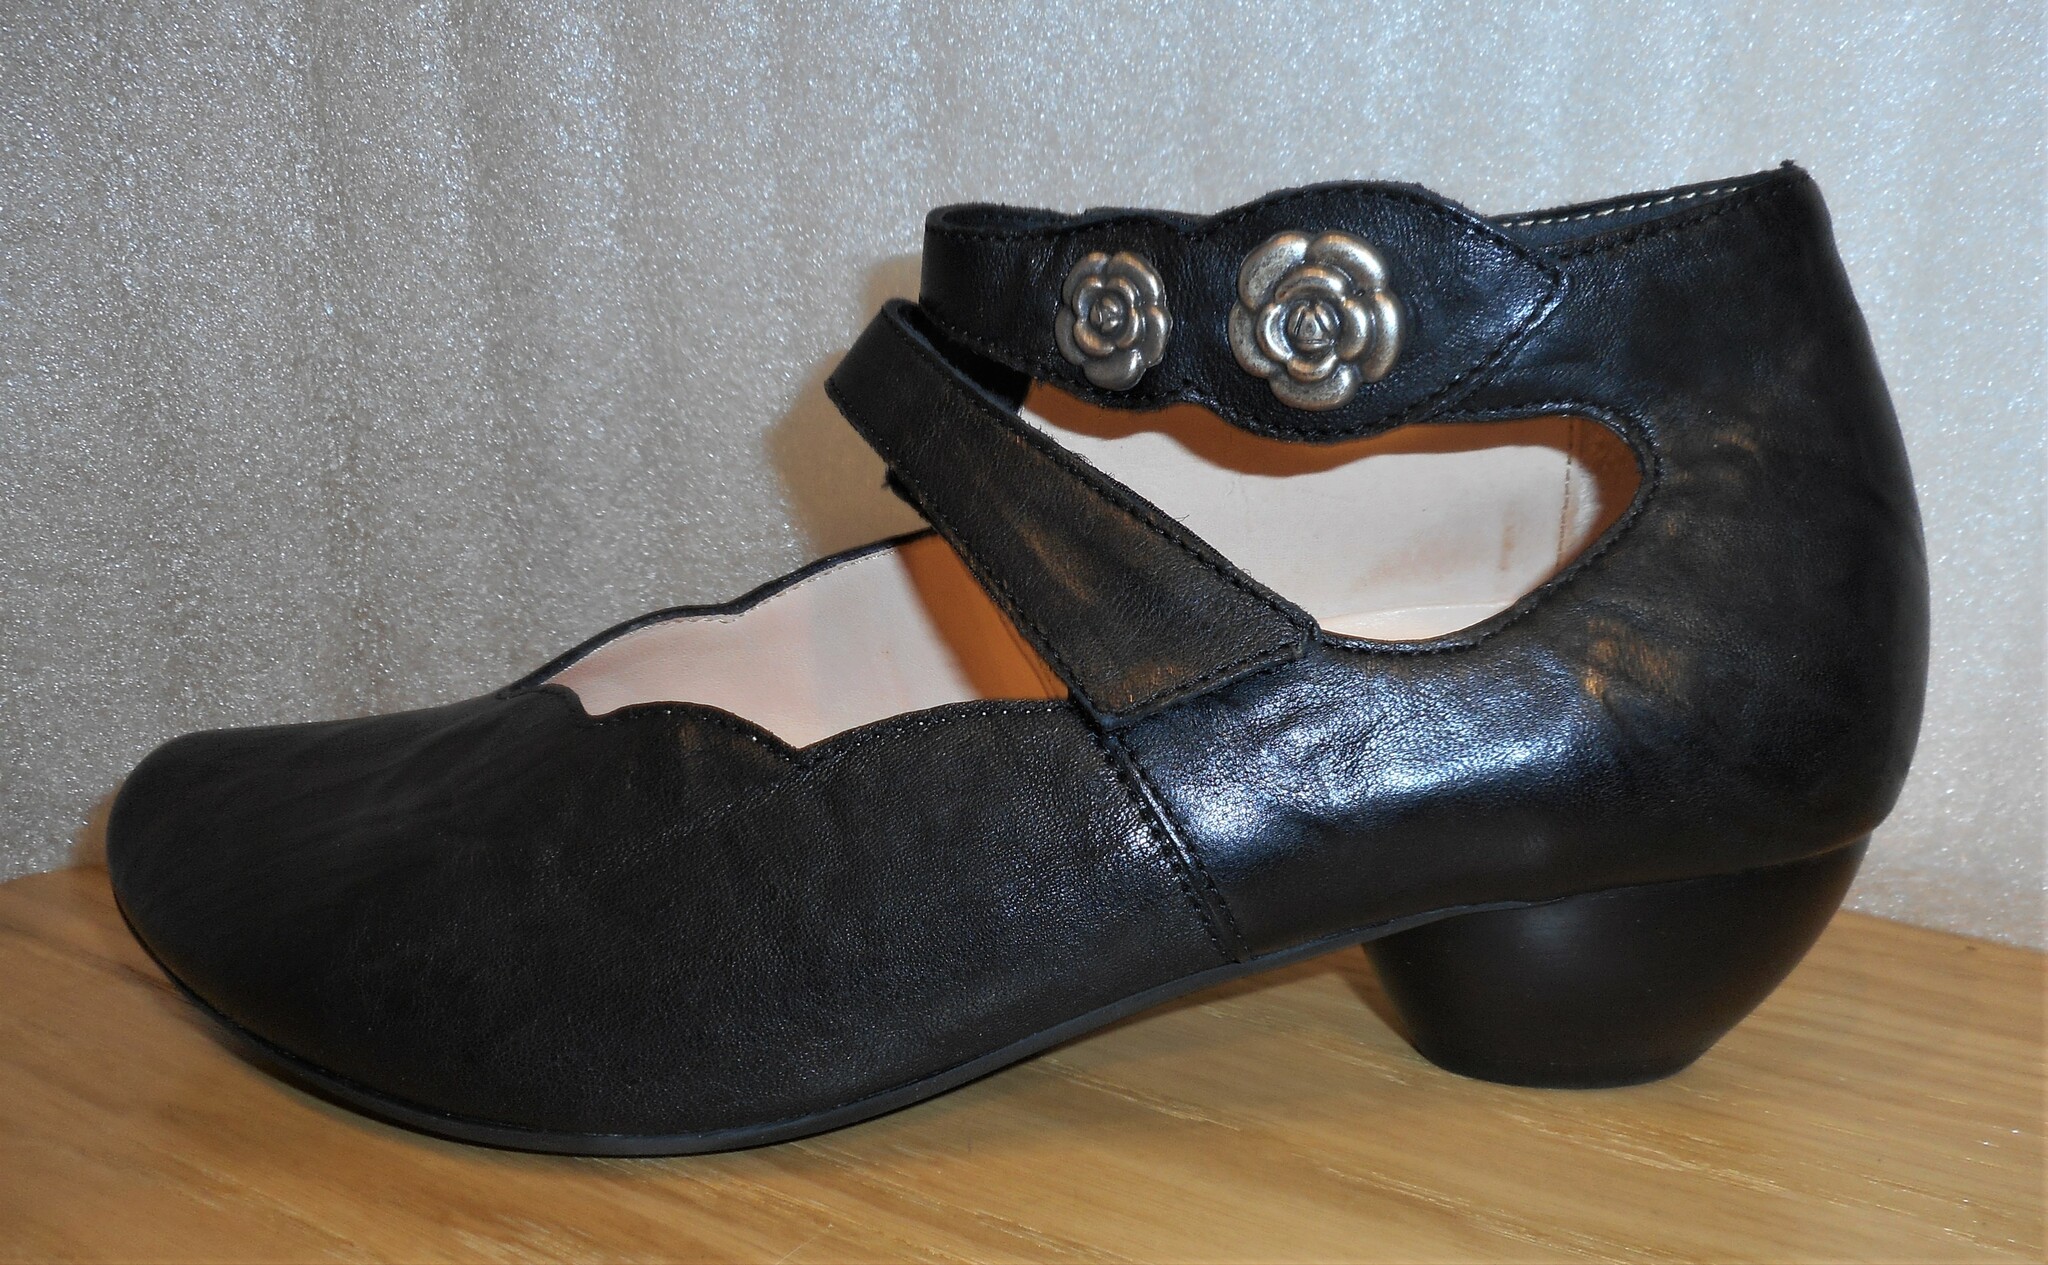 Svart sko med silverfärgade blommor - fabrikat Think!